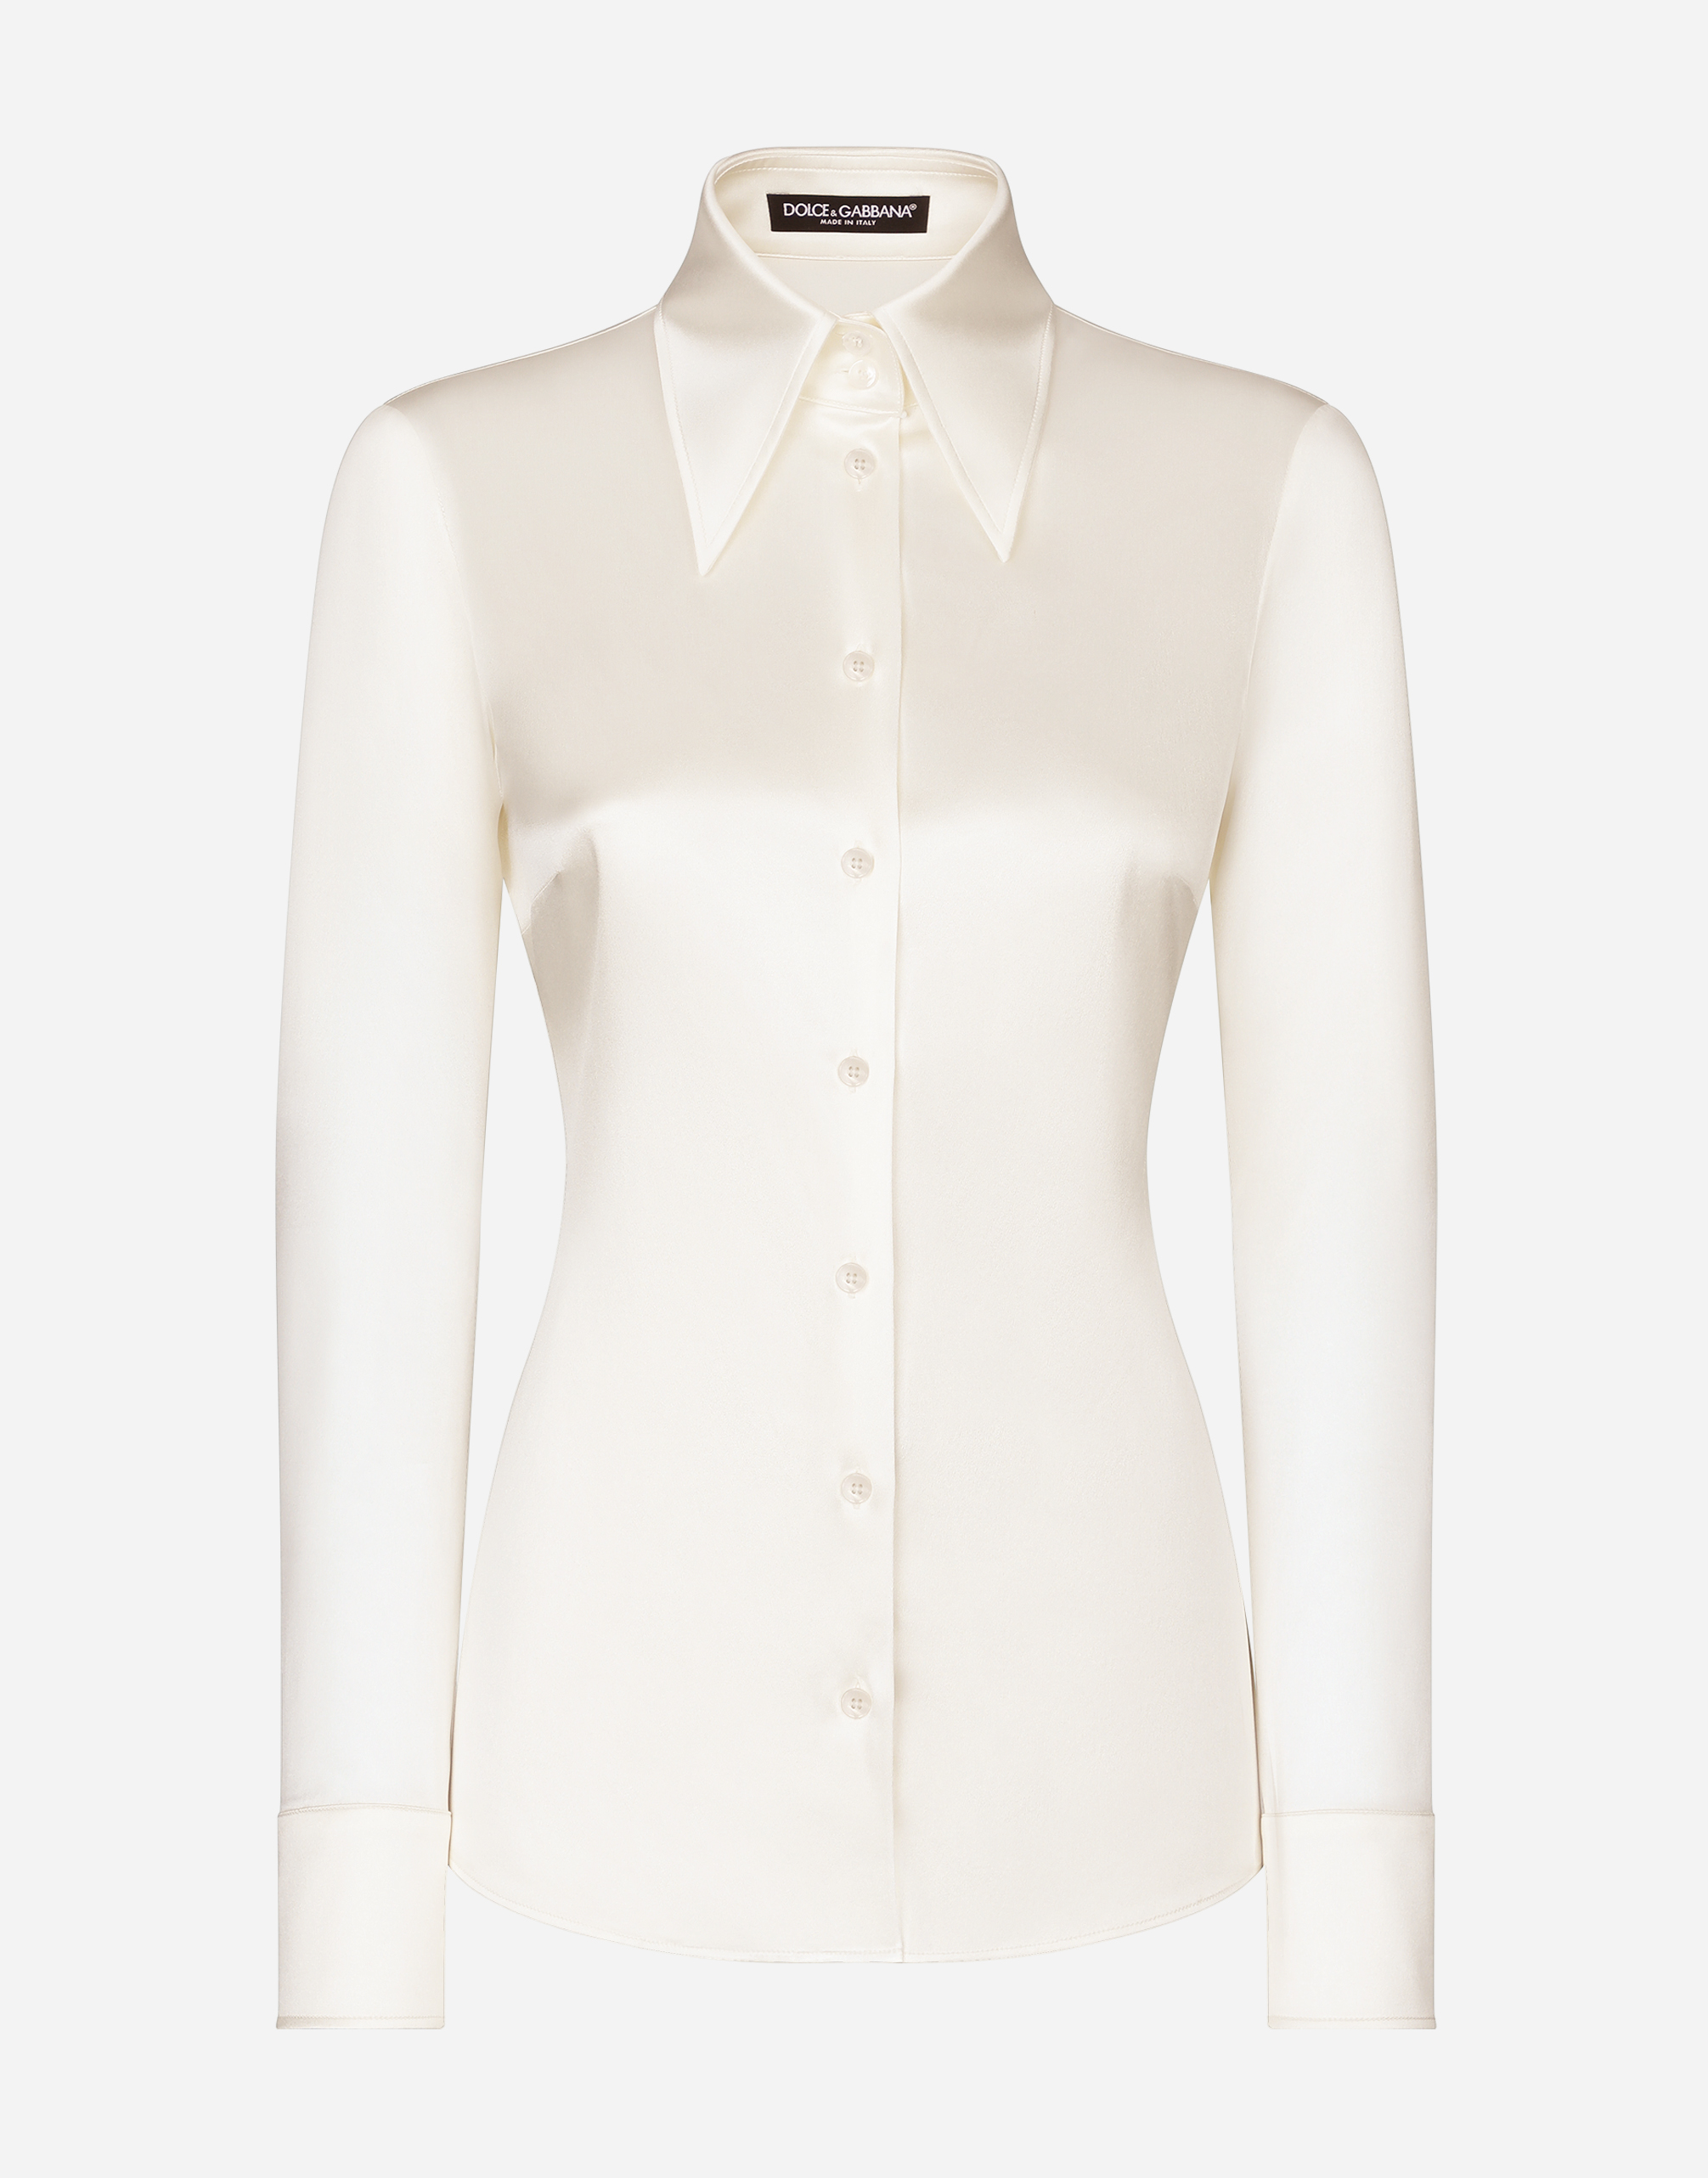 KIM DOLCE&GABBANA Satin shirt in White for Women 